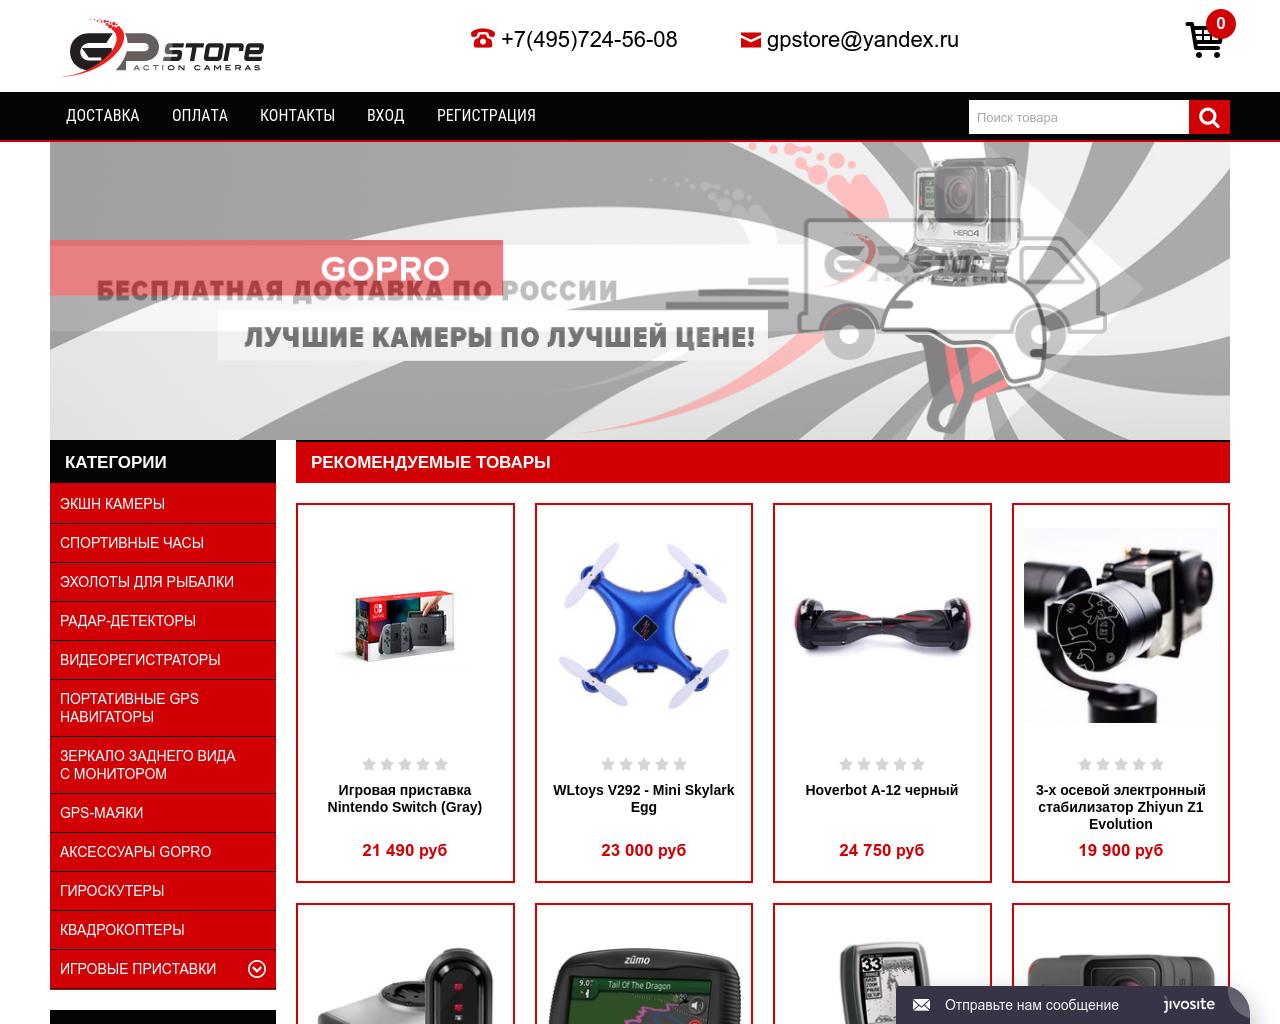 Изображение сайта gp-store.ru в разрешении 1280x1024